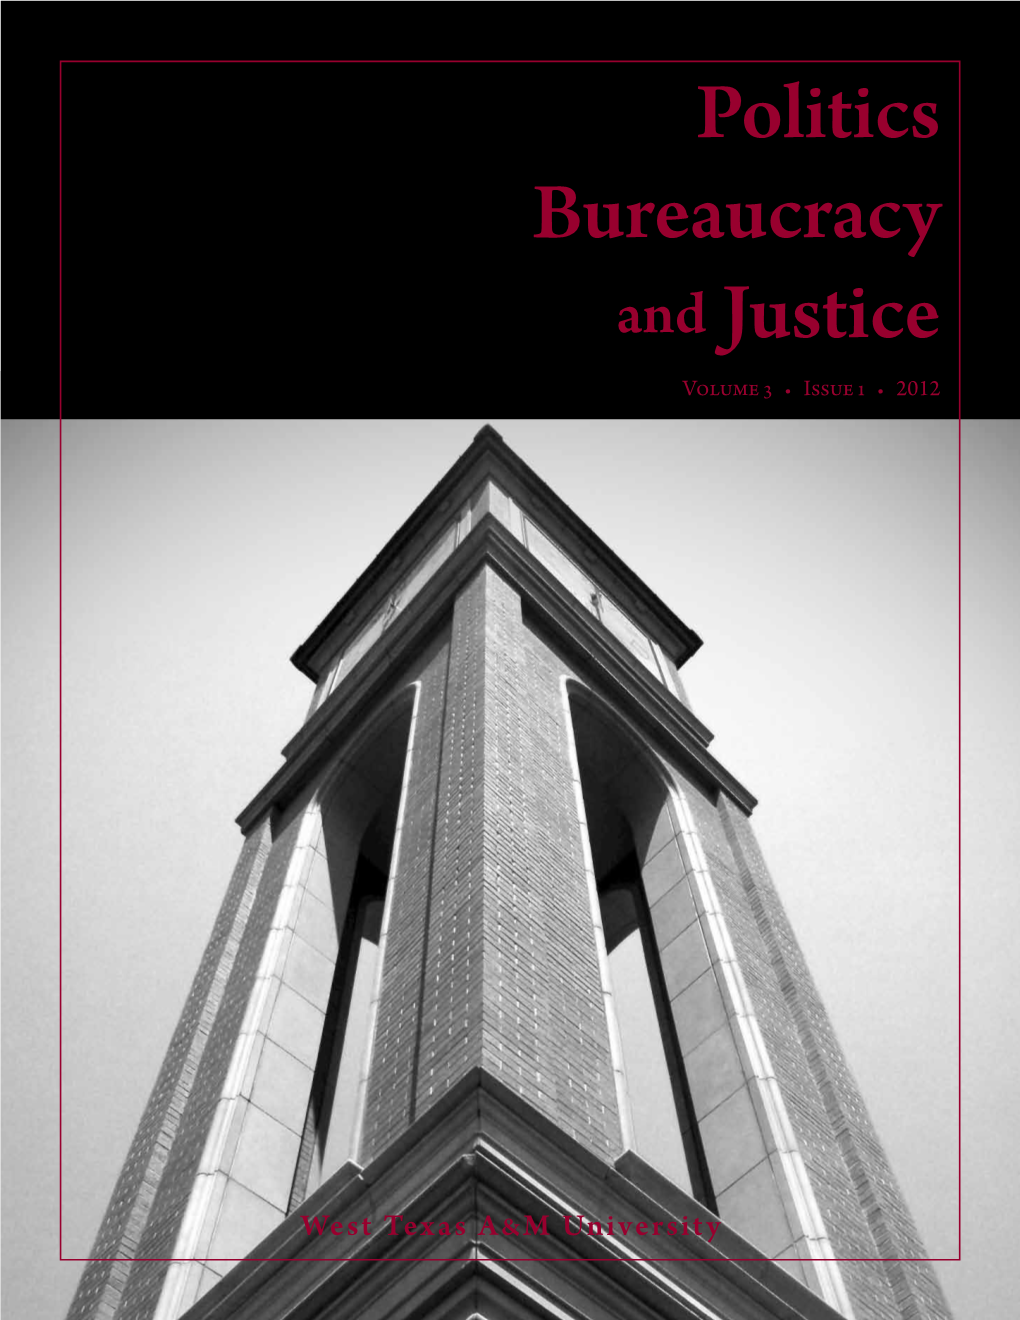 Politics Bureaucracy and Justice Volume 3 • Issue 1 • 2012